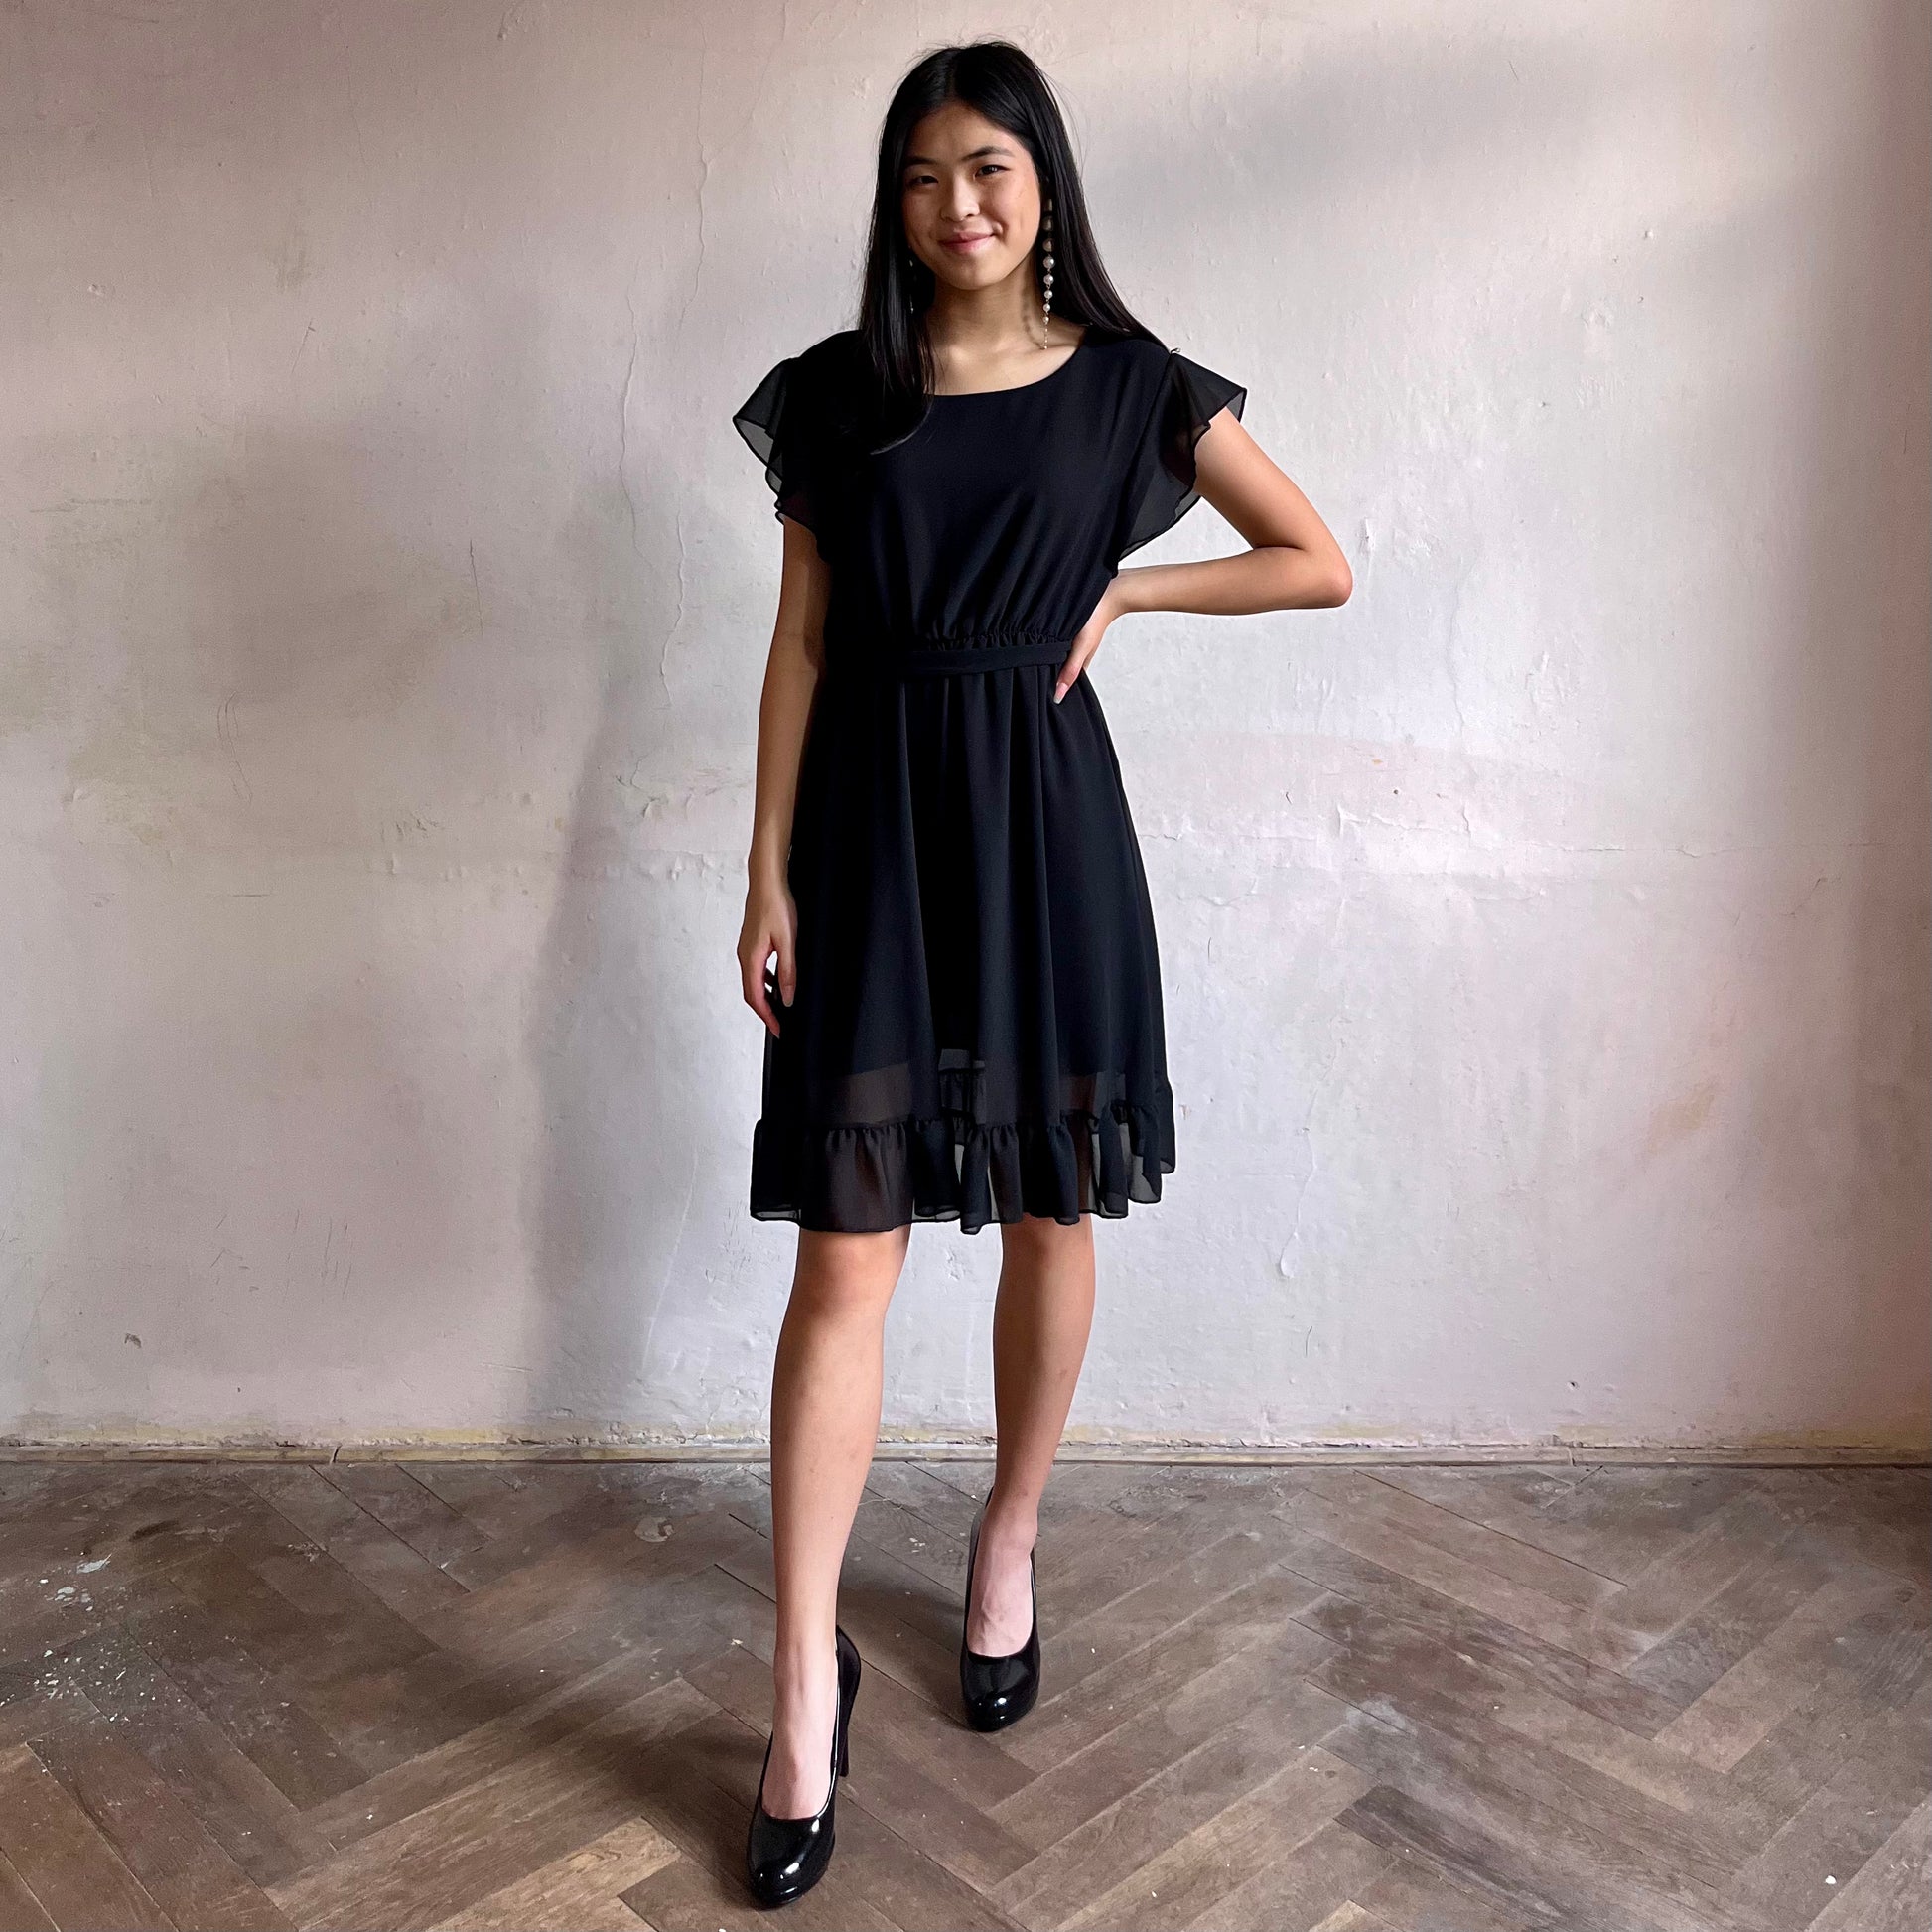 Modelka asijského původu pózující zepředu oblečená ve krátkých černých společenských šatech s volány